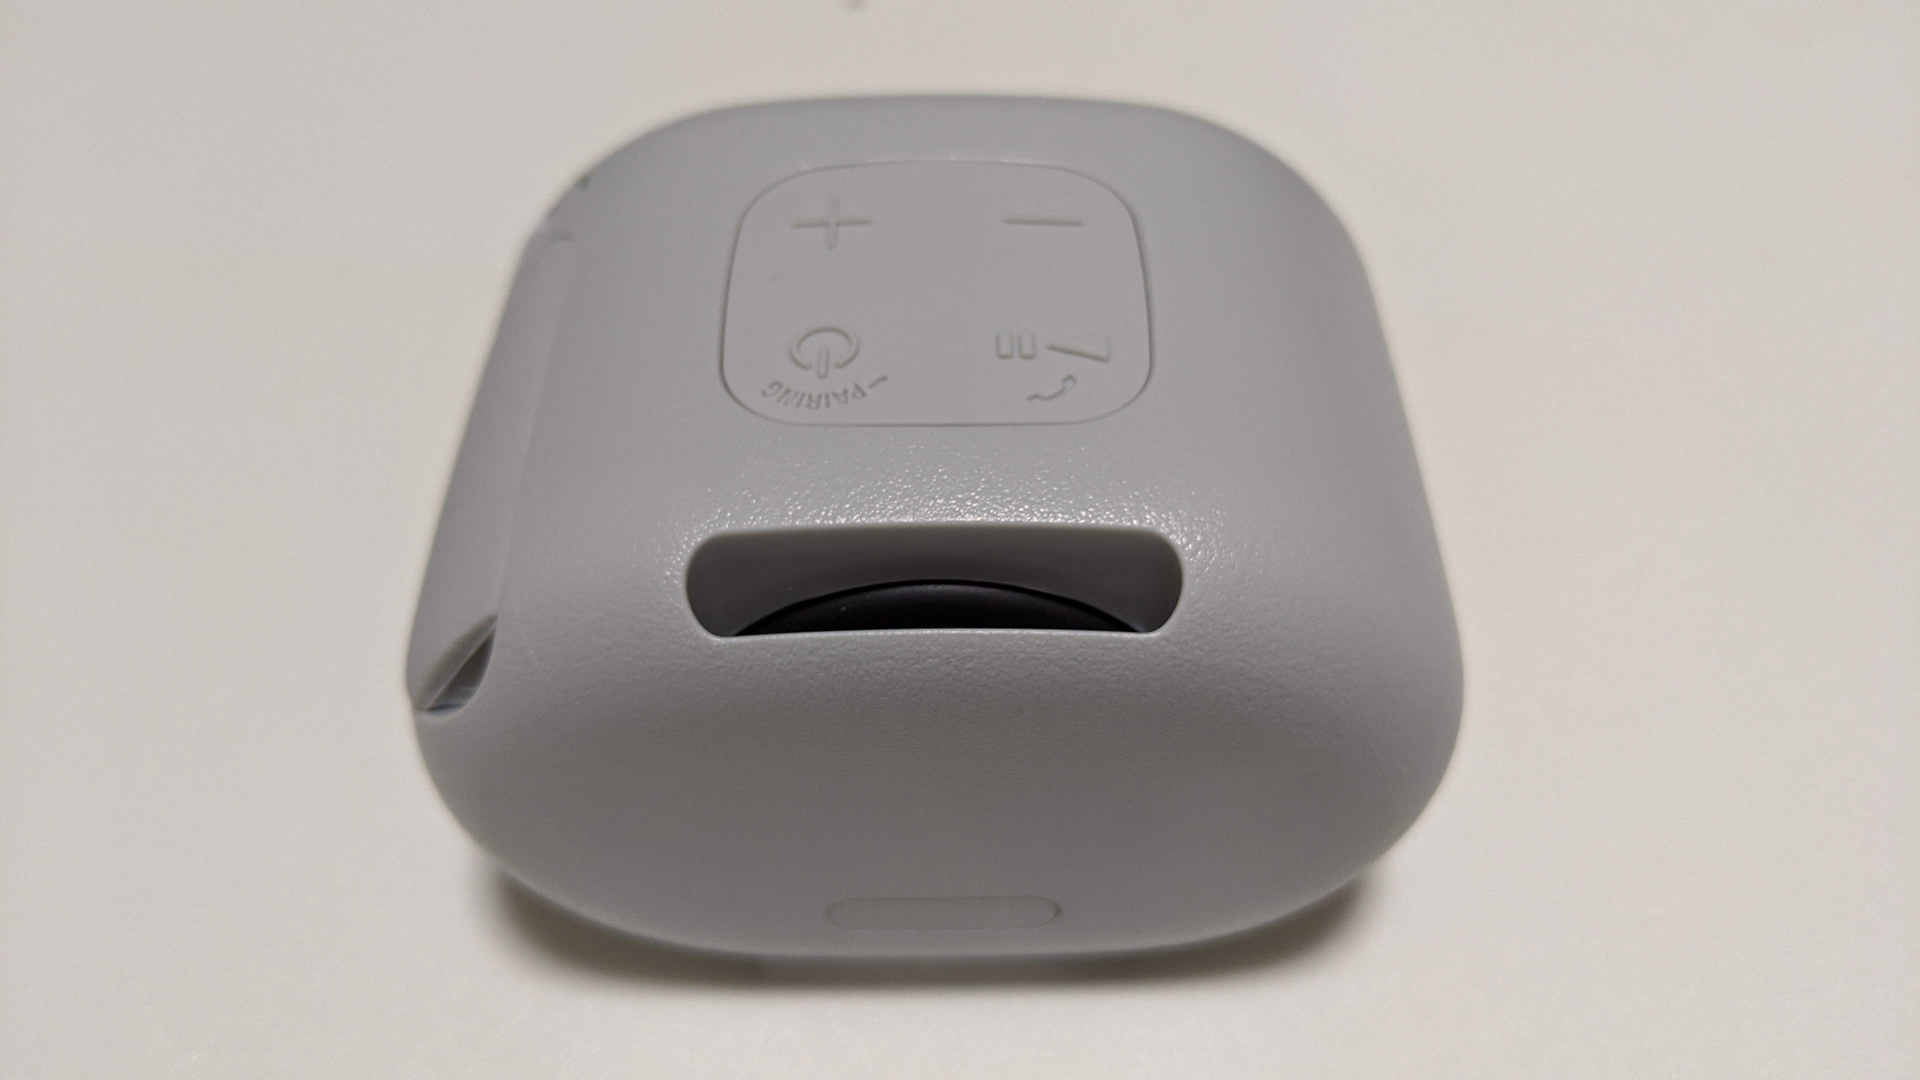 SONYの小型Bluetoothスピーカー「SRS-XB01」を入手。色んな用途に使える便利なスピーカーでした。 | Secura Vita